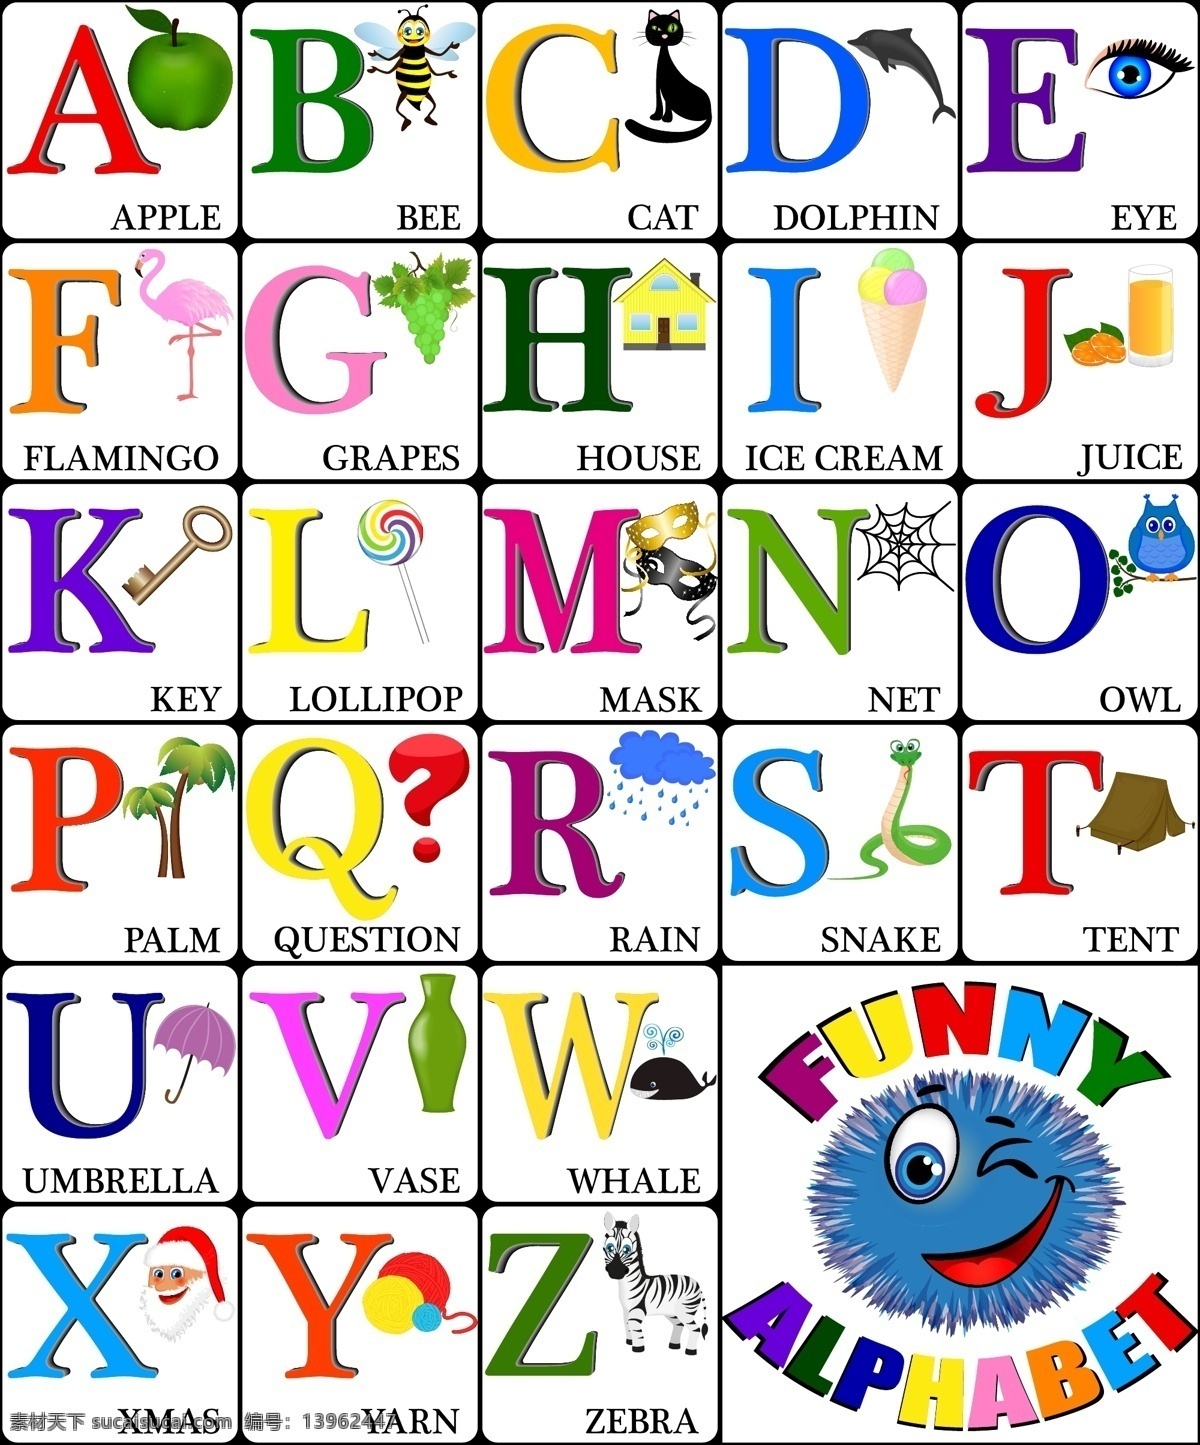 字母表 字母设计 英文字母 卡通动物 手写 字母 英语字母表 英文 数字 拼音 卡通字母 创意字母 时尚字母 时尚 手绘 装饰 字母主题 矢量